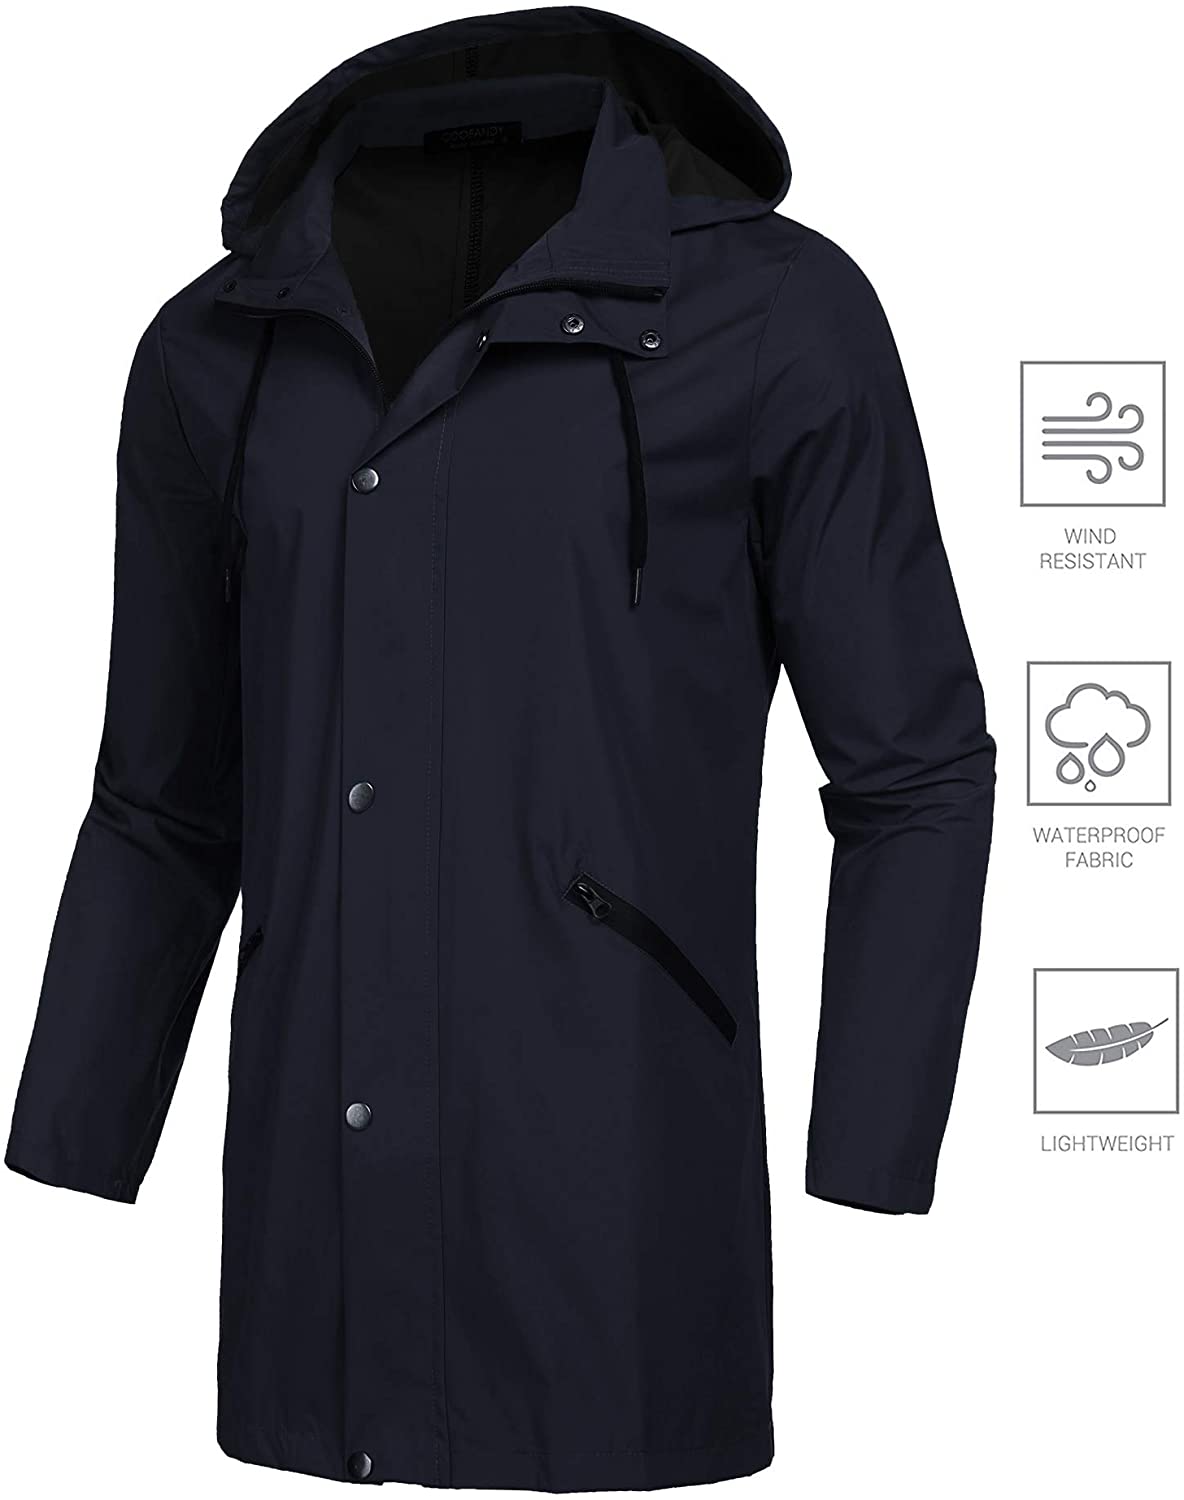 COOFANDY Men's Waterproof Rain Jacket with Hood Lightweight Packable ...